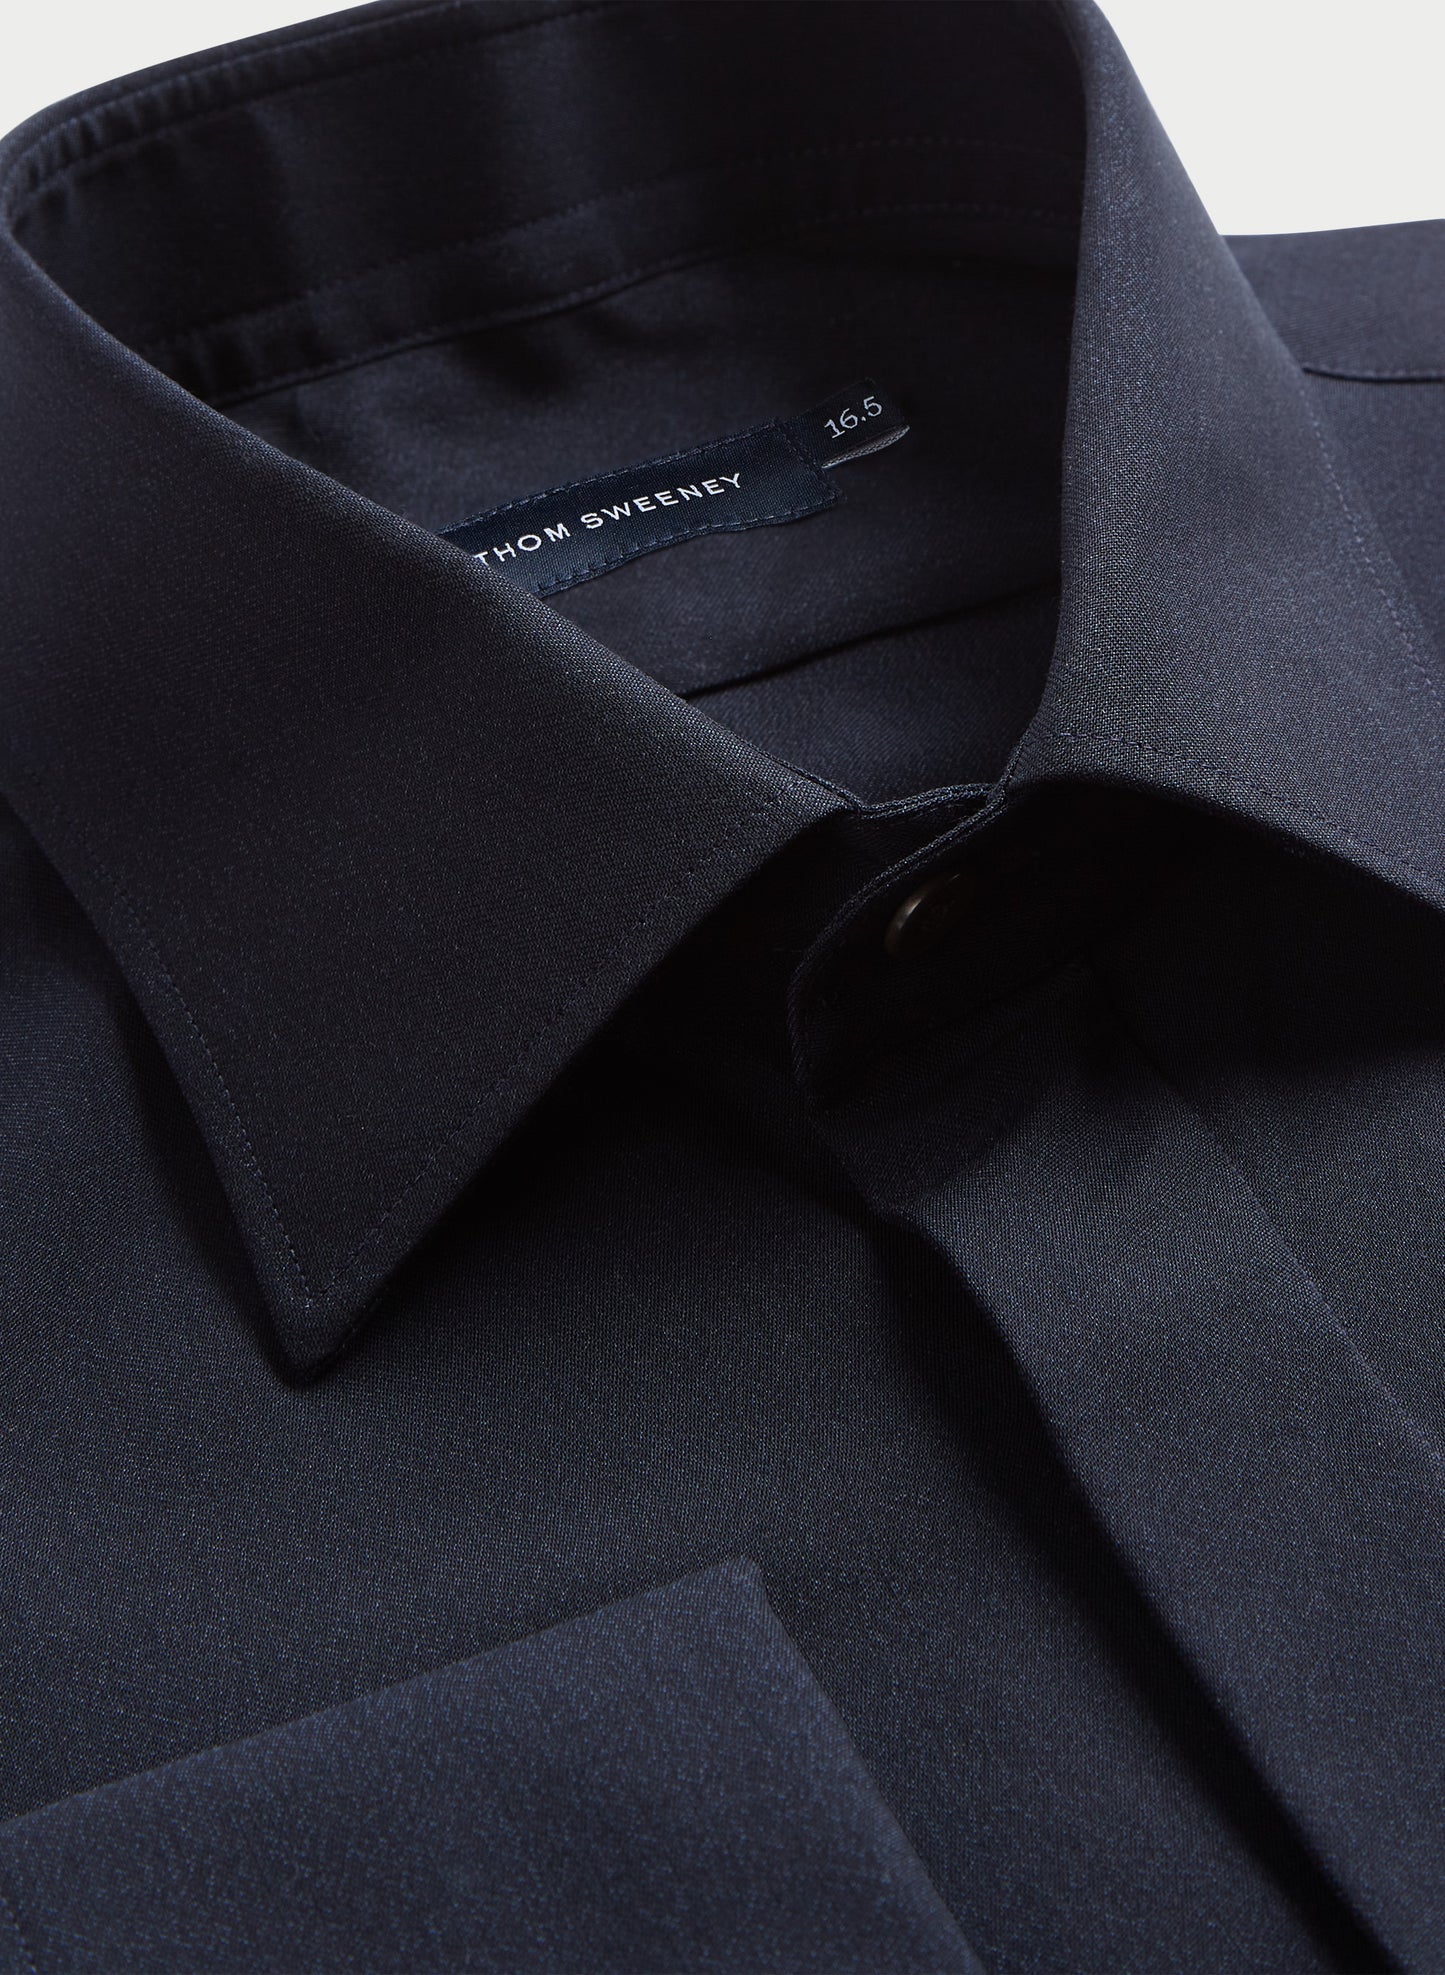 Super 130s Wool Silk Dress Shirt Midnight Navy Product Neck Detail